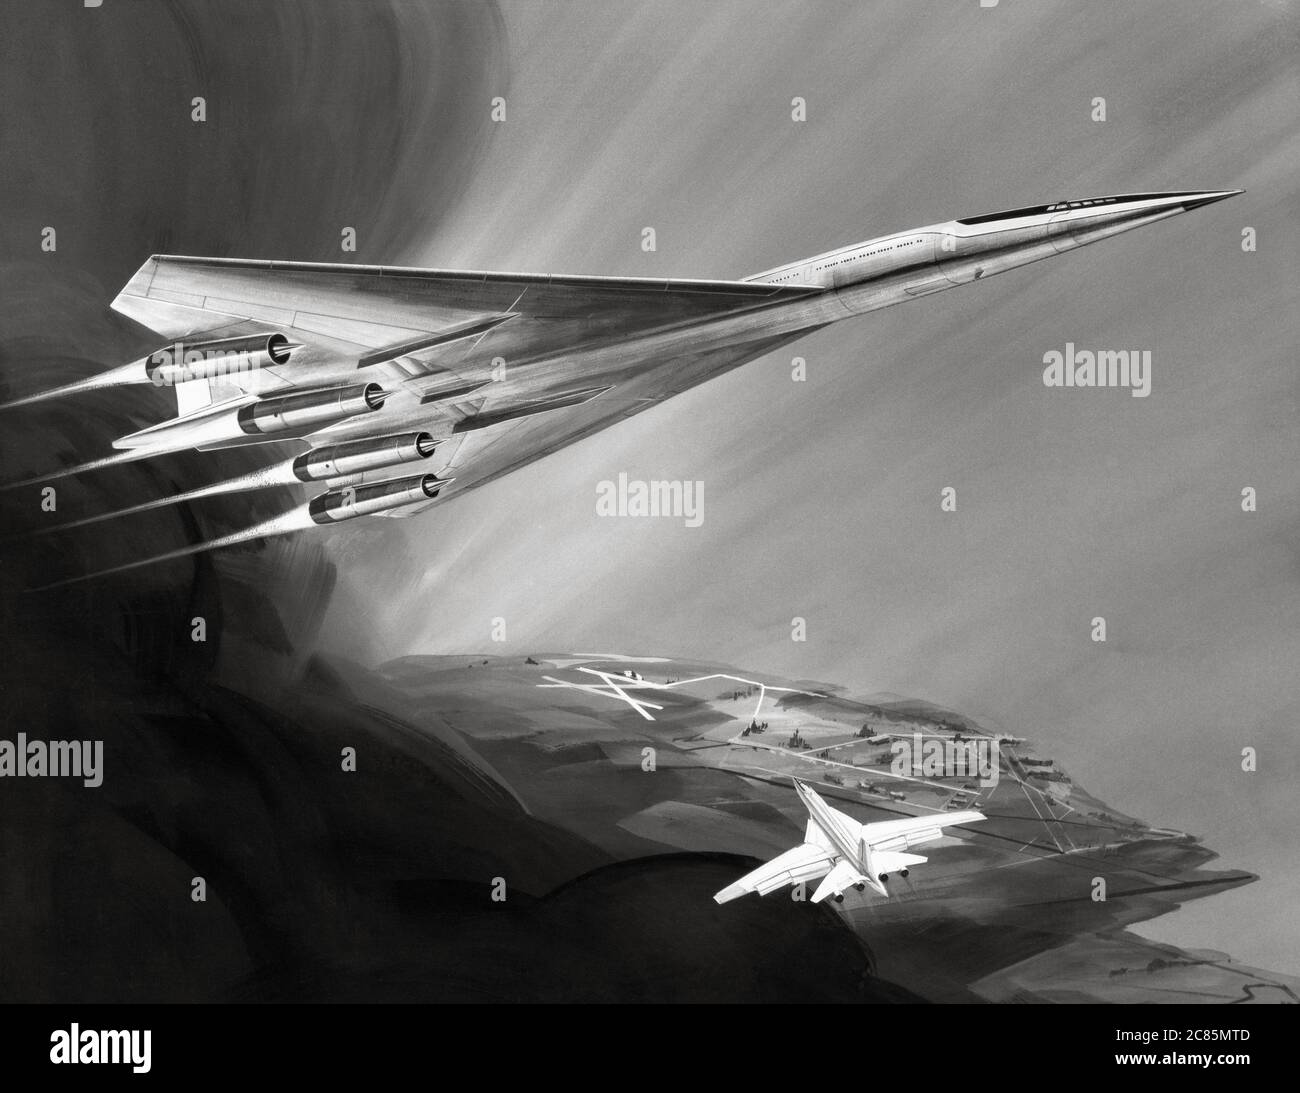 La rappresentazione artistica del Boeing 2707, che divenne il primo aereo di linea supersonico americano (SST). Illustrazione datata 1970 Foto Stock